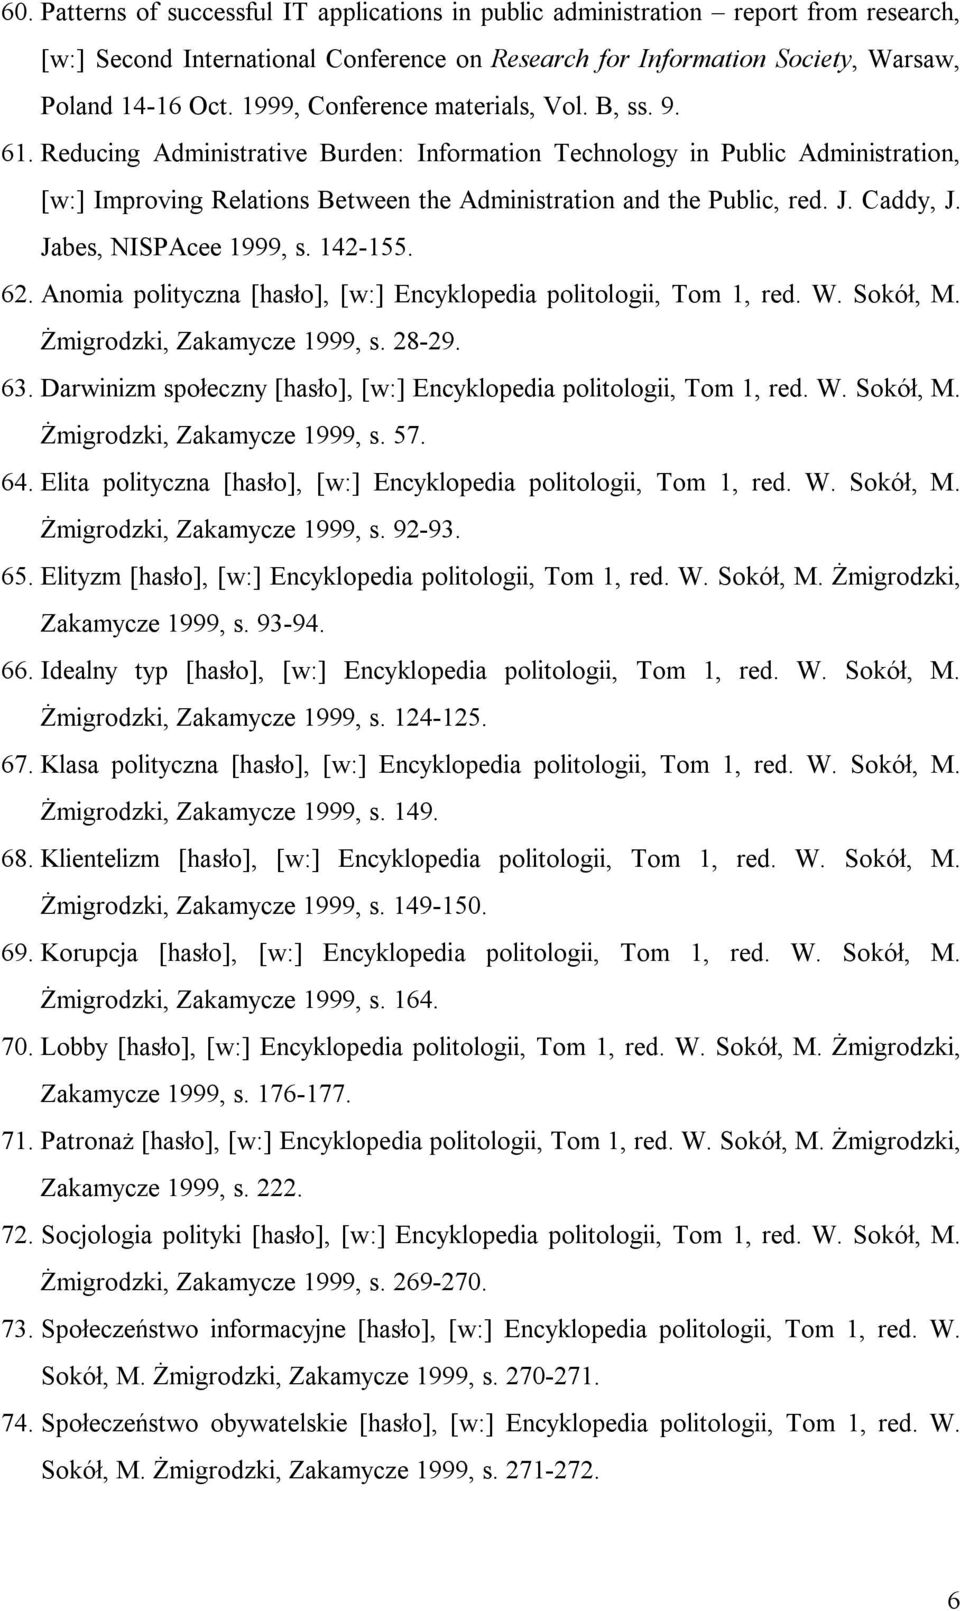 J. Caddy, J. Jabes, NISPAcee 1999, s. 142-155. 62. Anomia polityczna [hasło], [w:] Encyklopedia politologii, Tom 1, red. W. Sokół, M. Żmigrodzki, Zakamycze 1999, s. 28-29. 63.